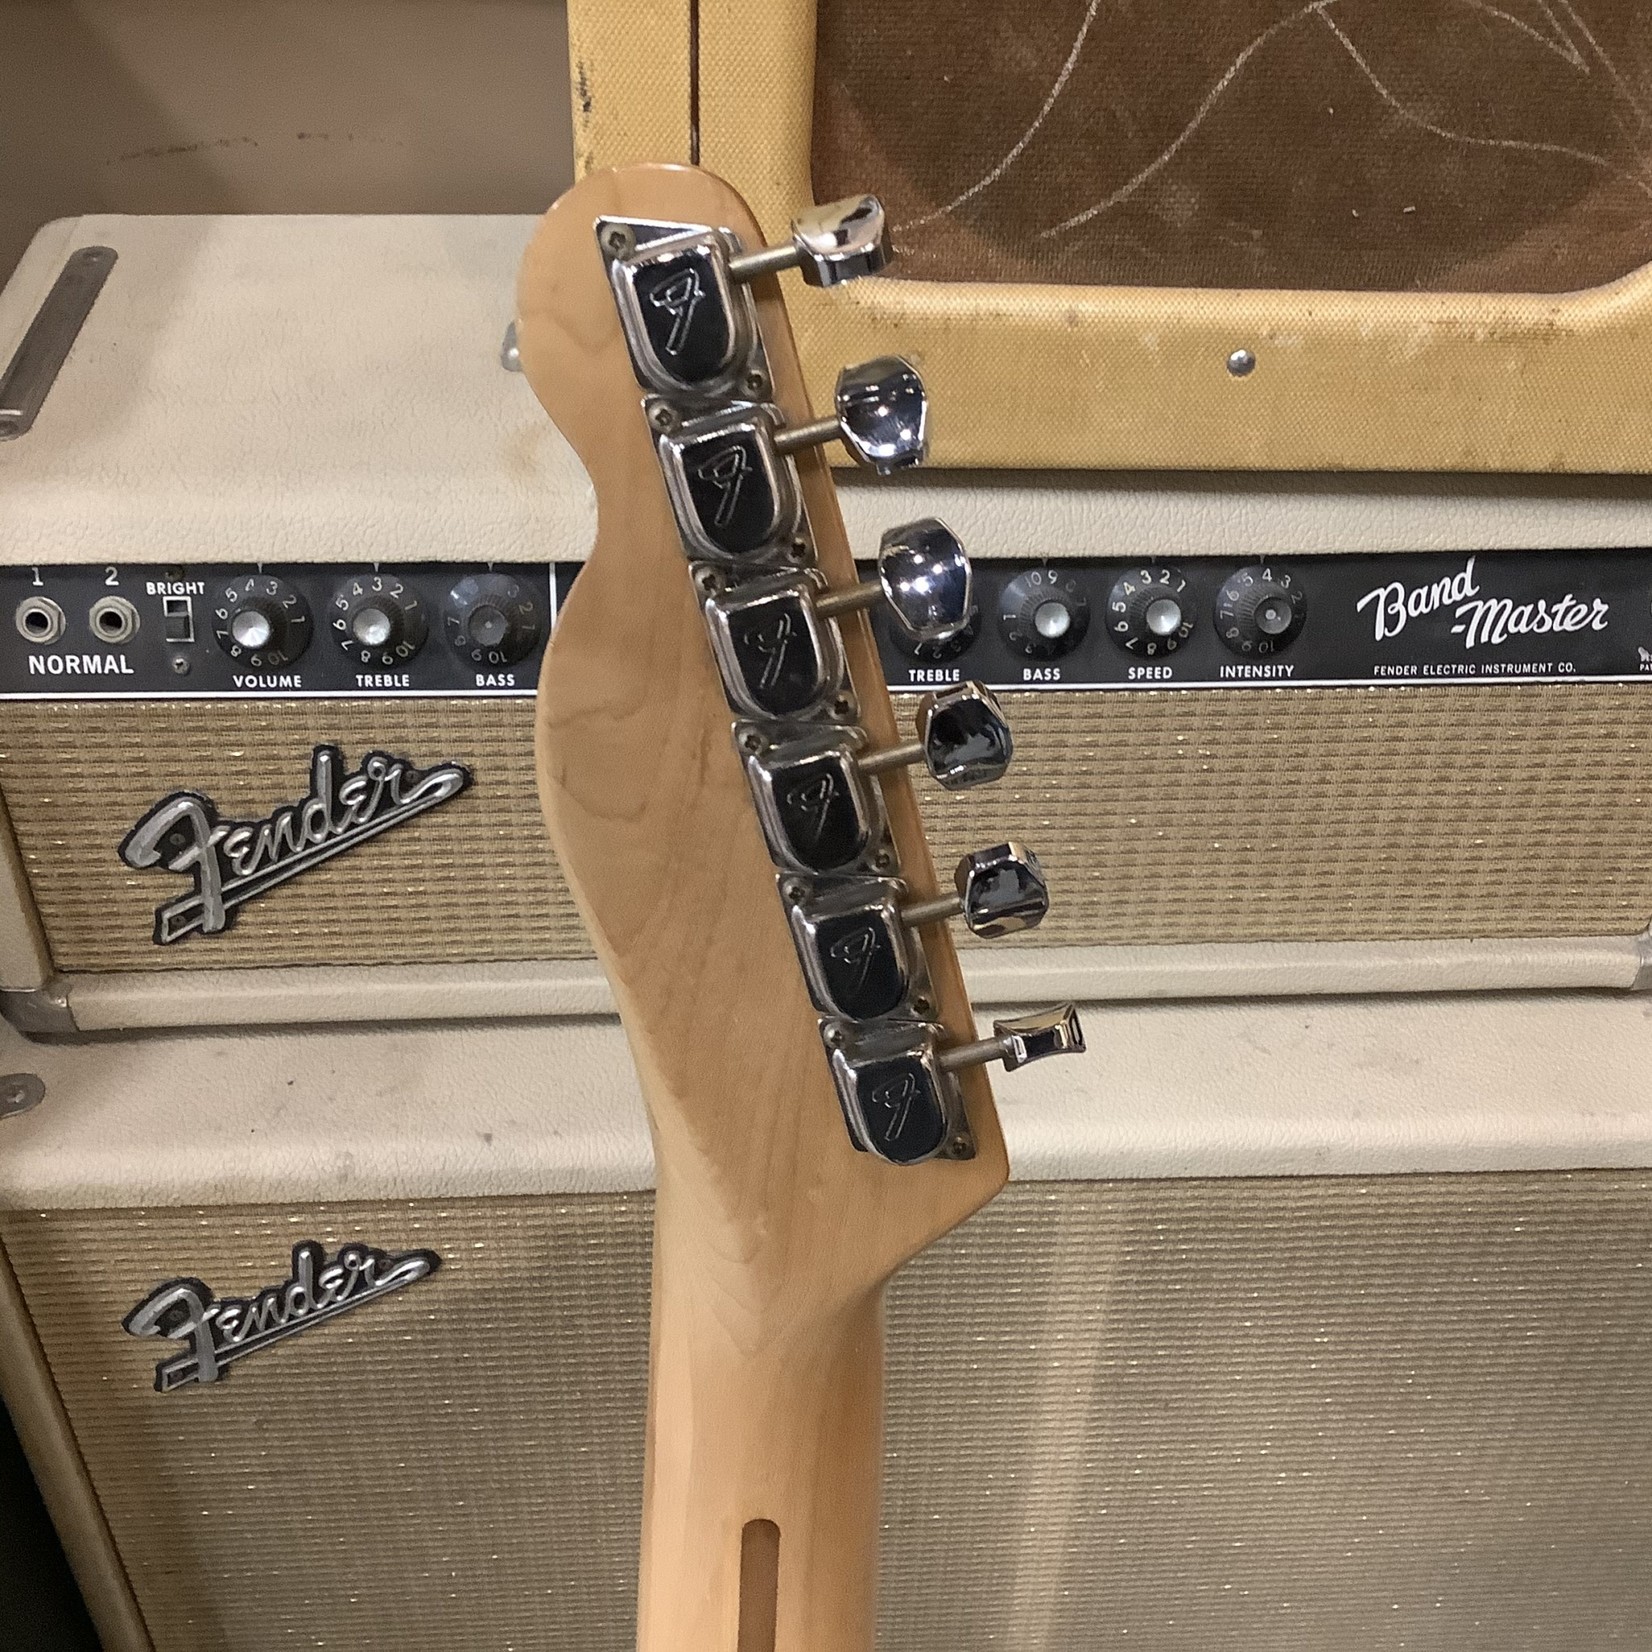 Fender 1972 Fender Telecaster Blonde